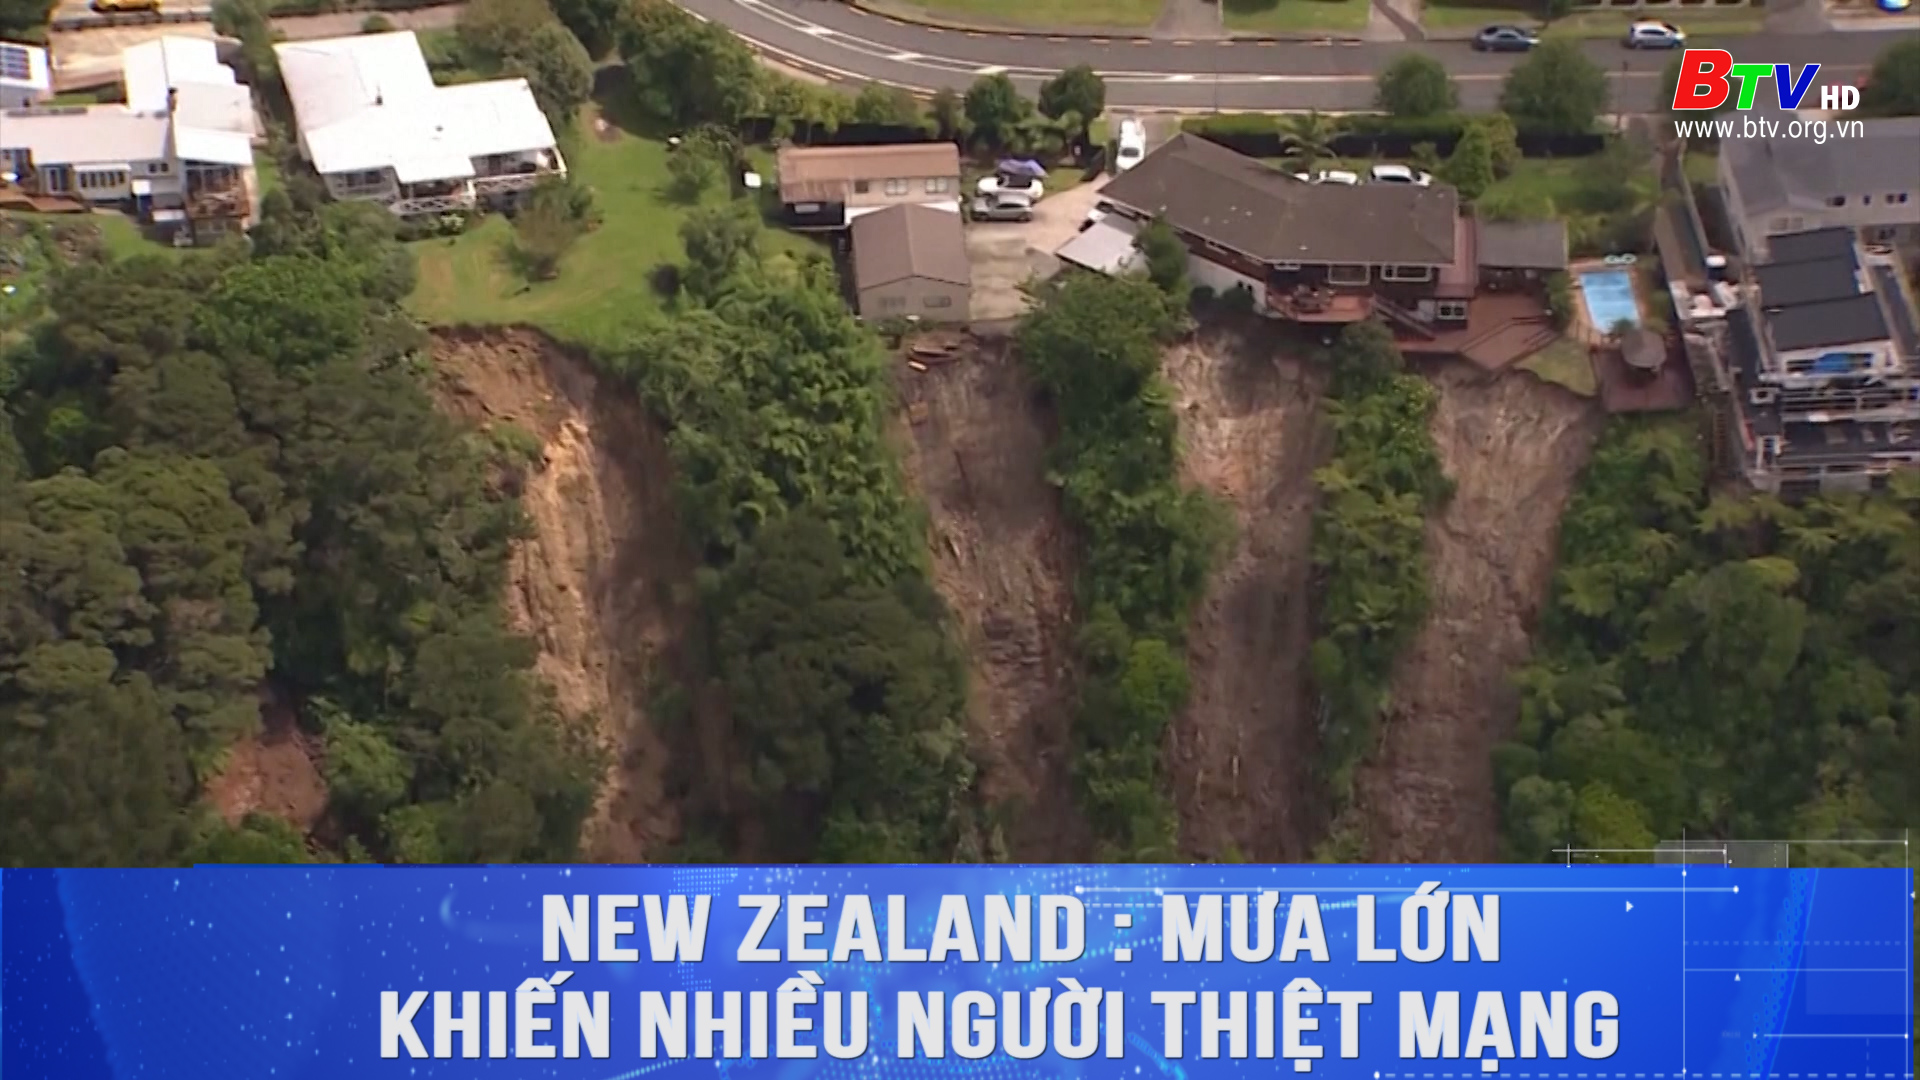 Mưa lớn khiến nhiều người thiệt mạng ở New Zealand